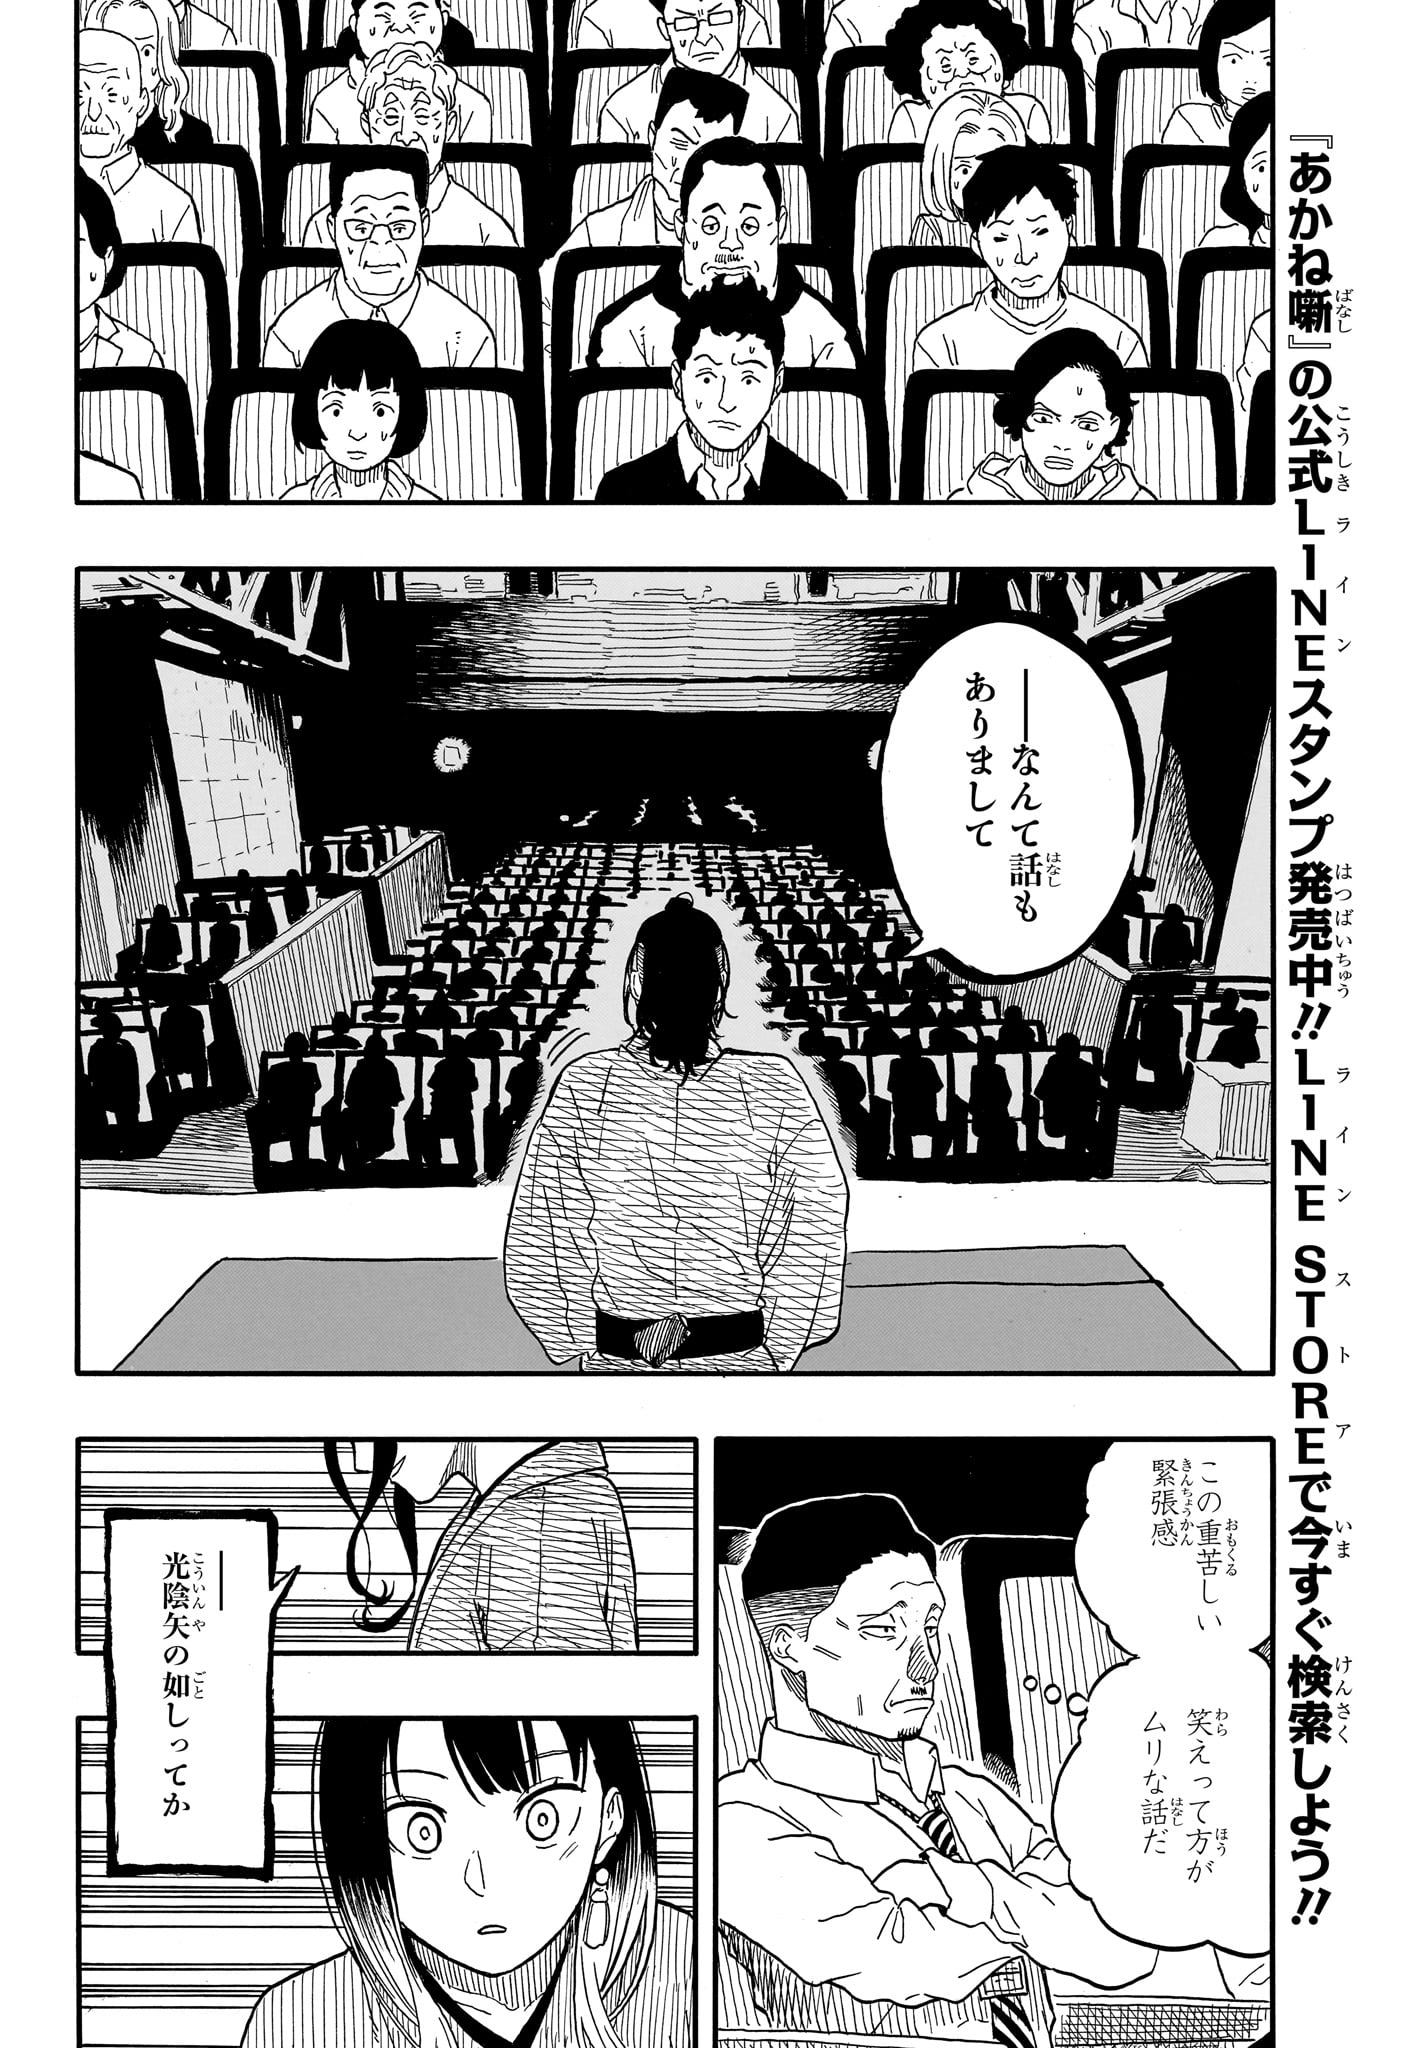 Akane-Banashi - Chapter 111 - Page 4